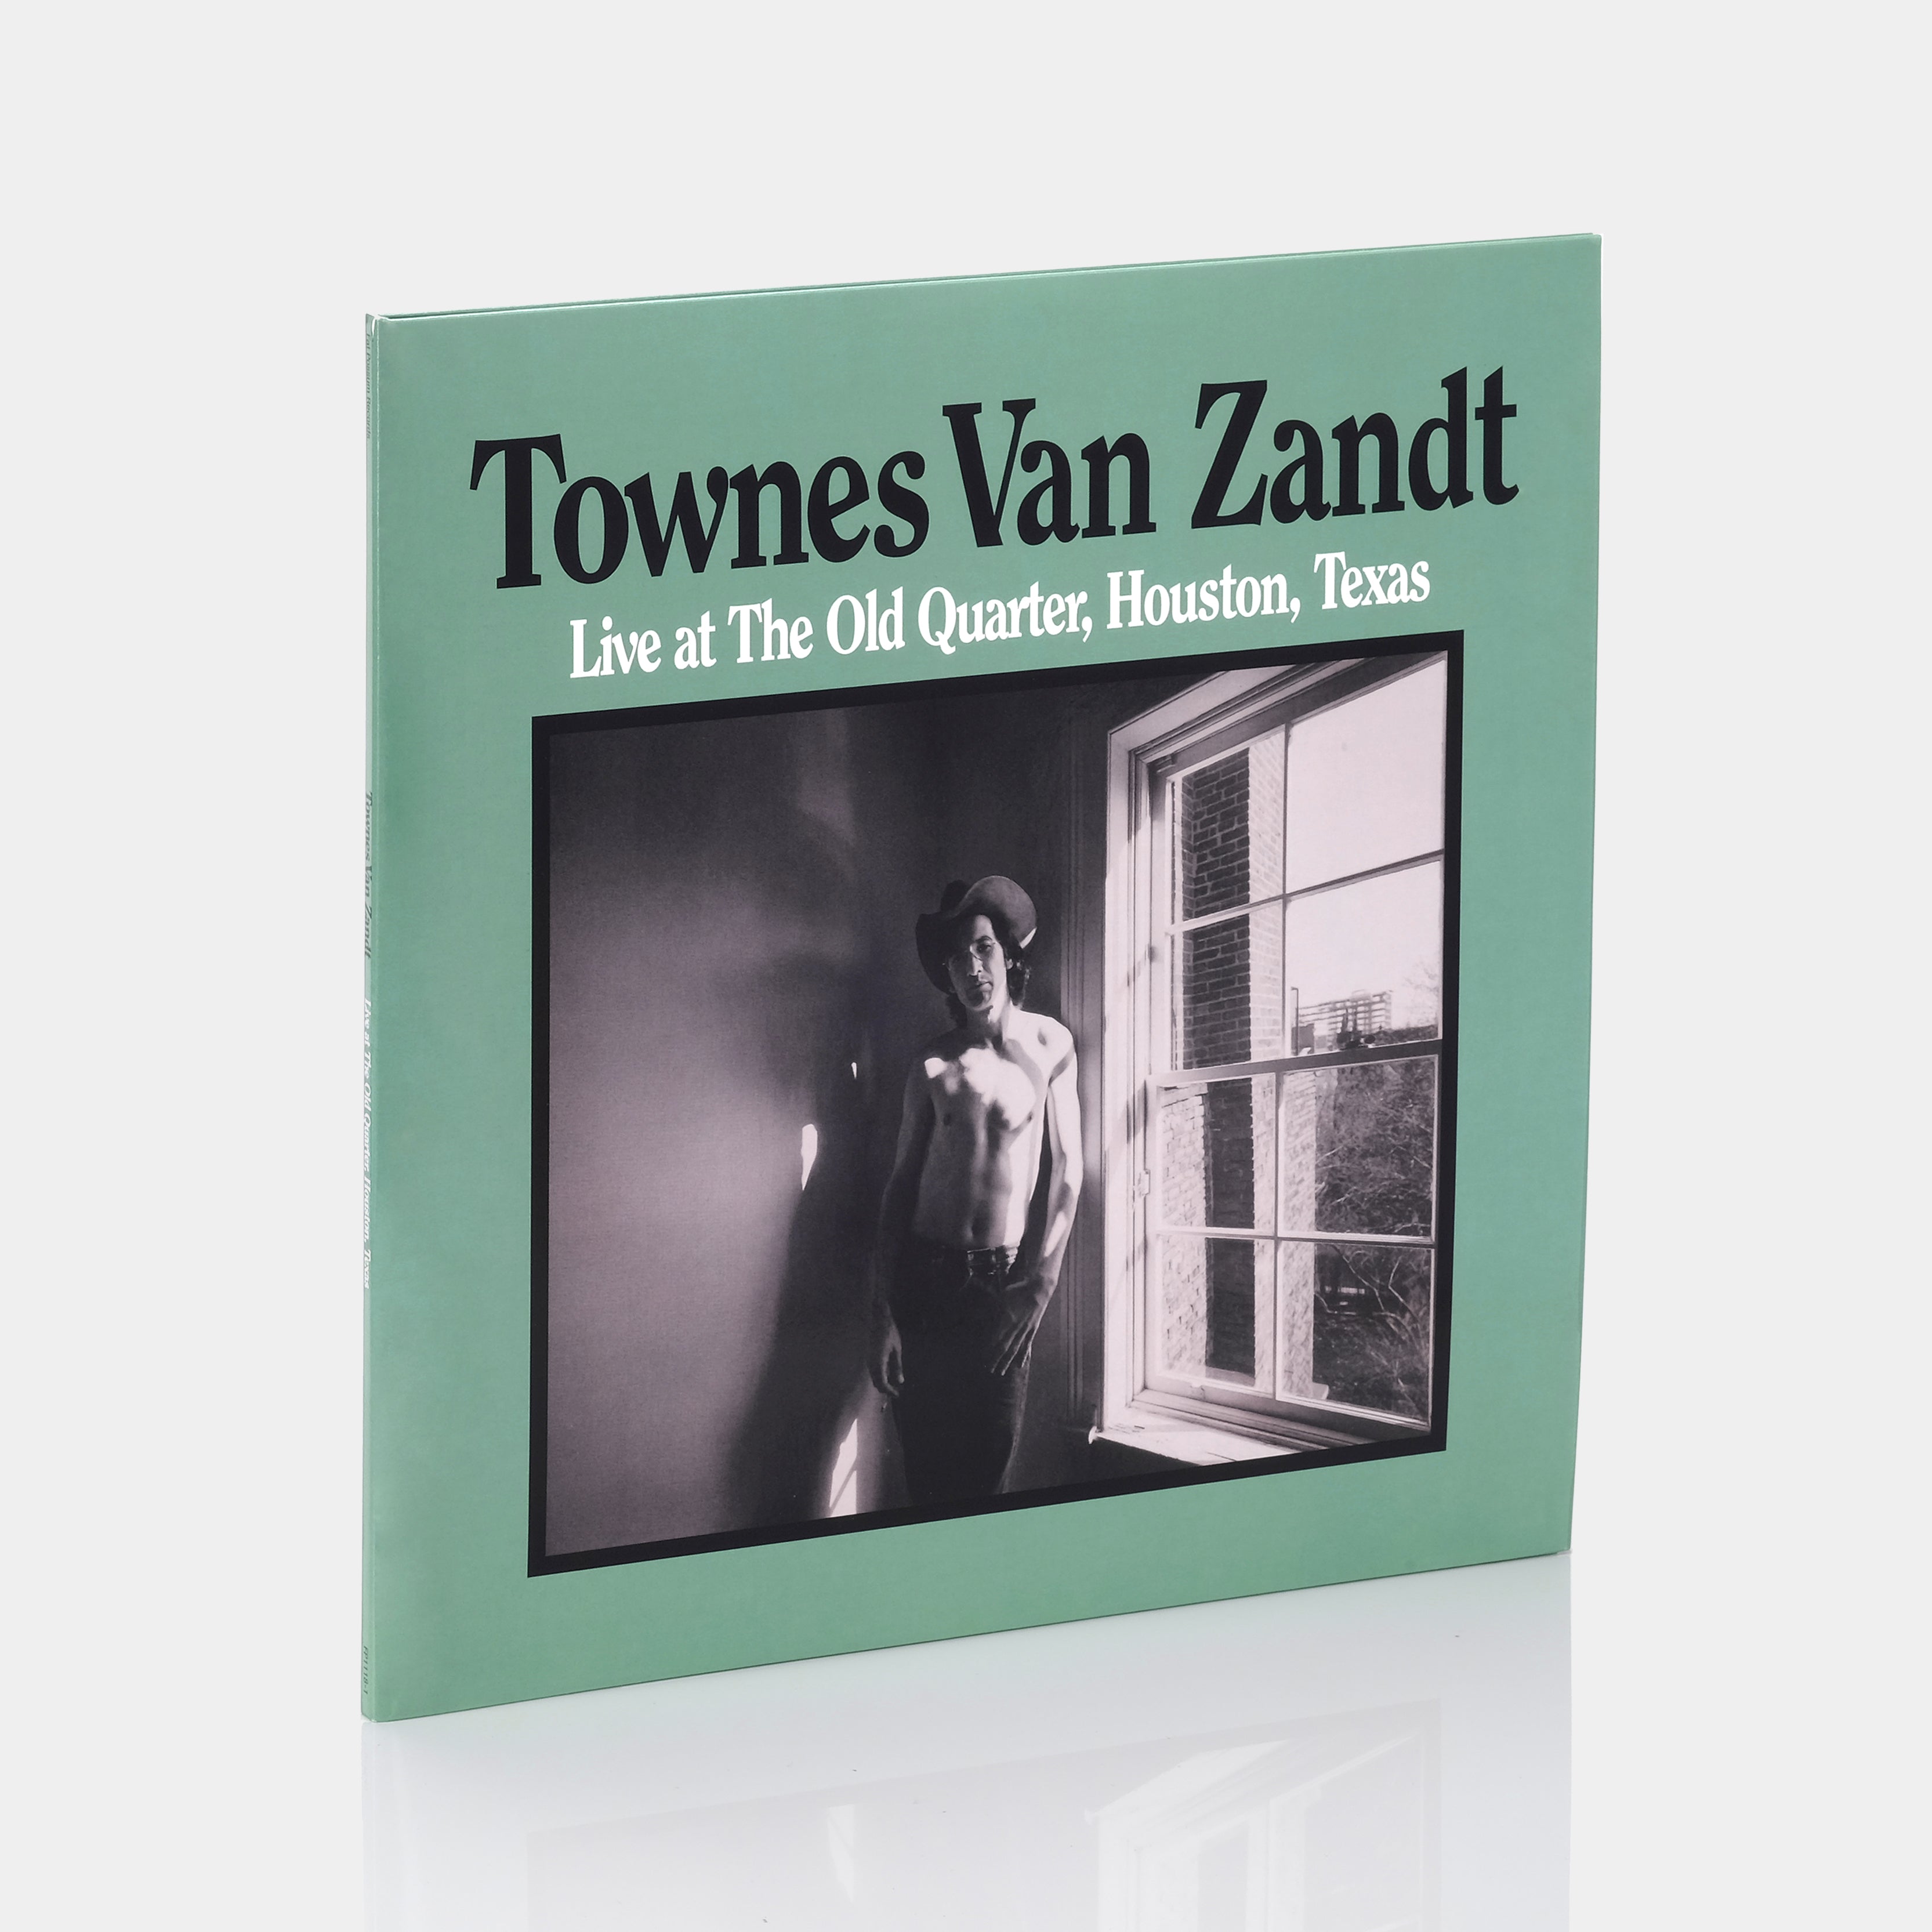 Townes Van Zandt - Live At The Old Quarter, Houston, Texas 2xLP Vinyl Record